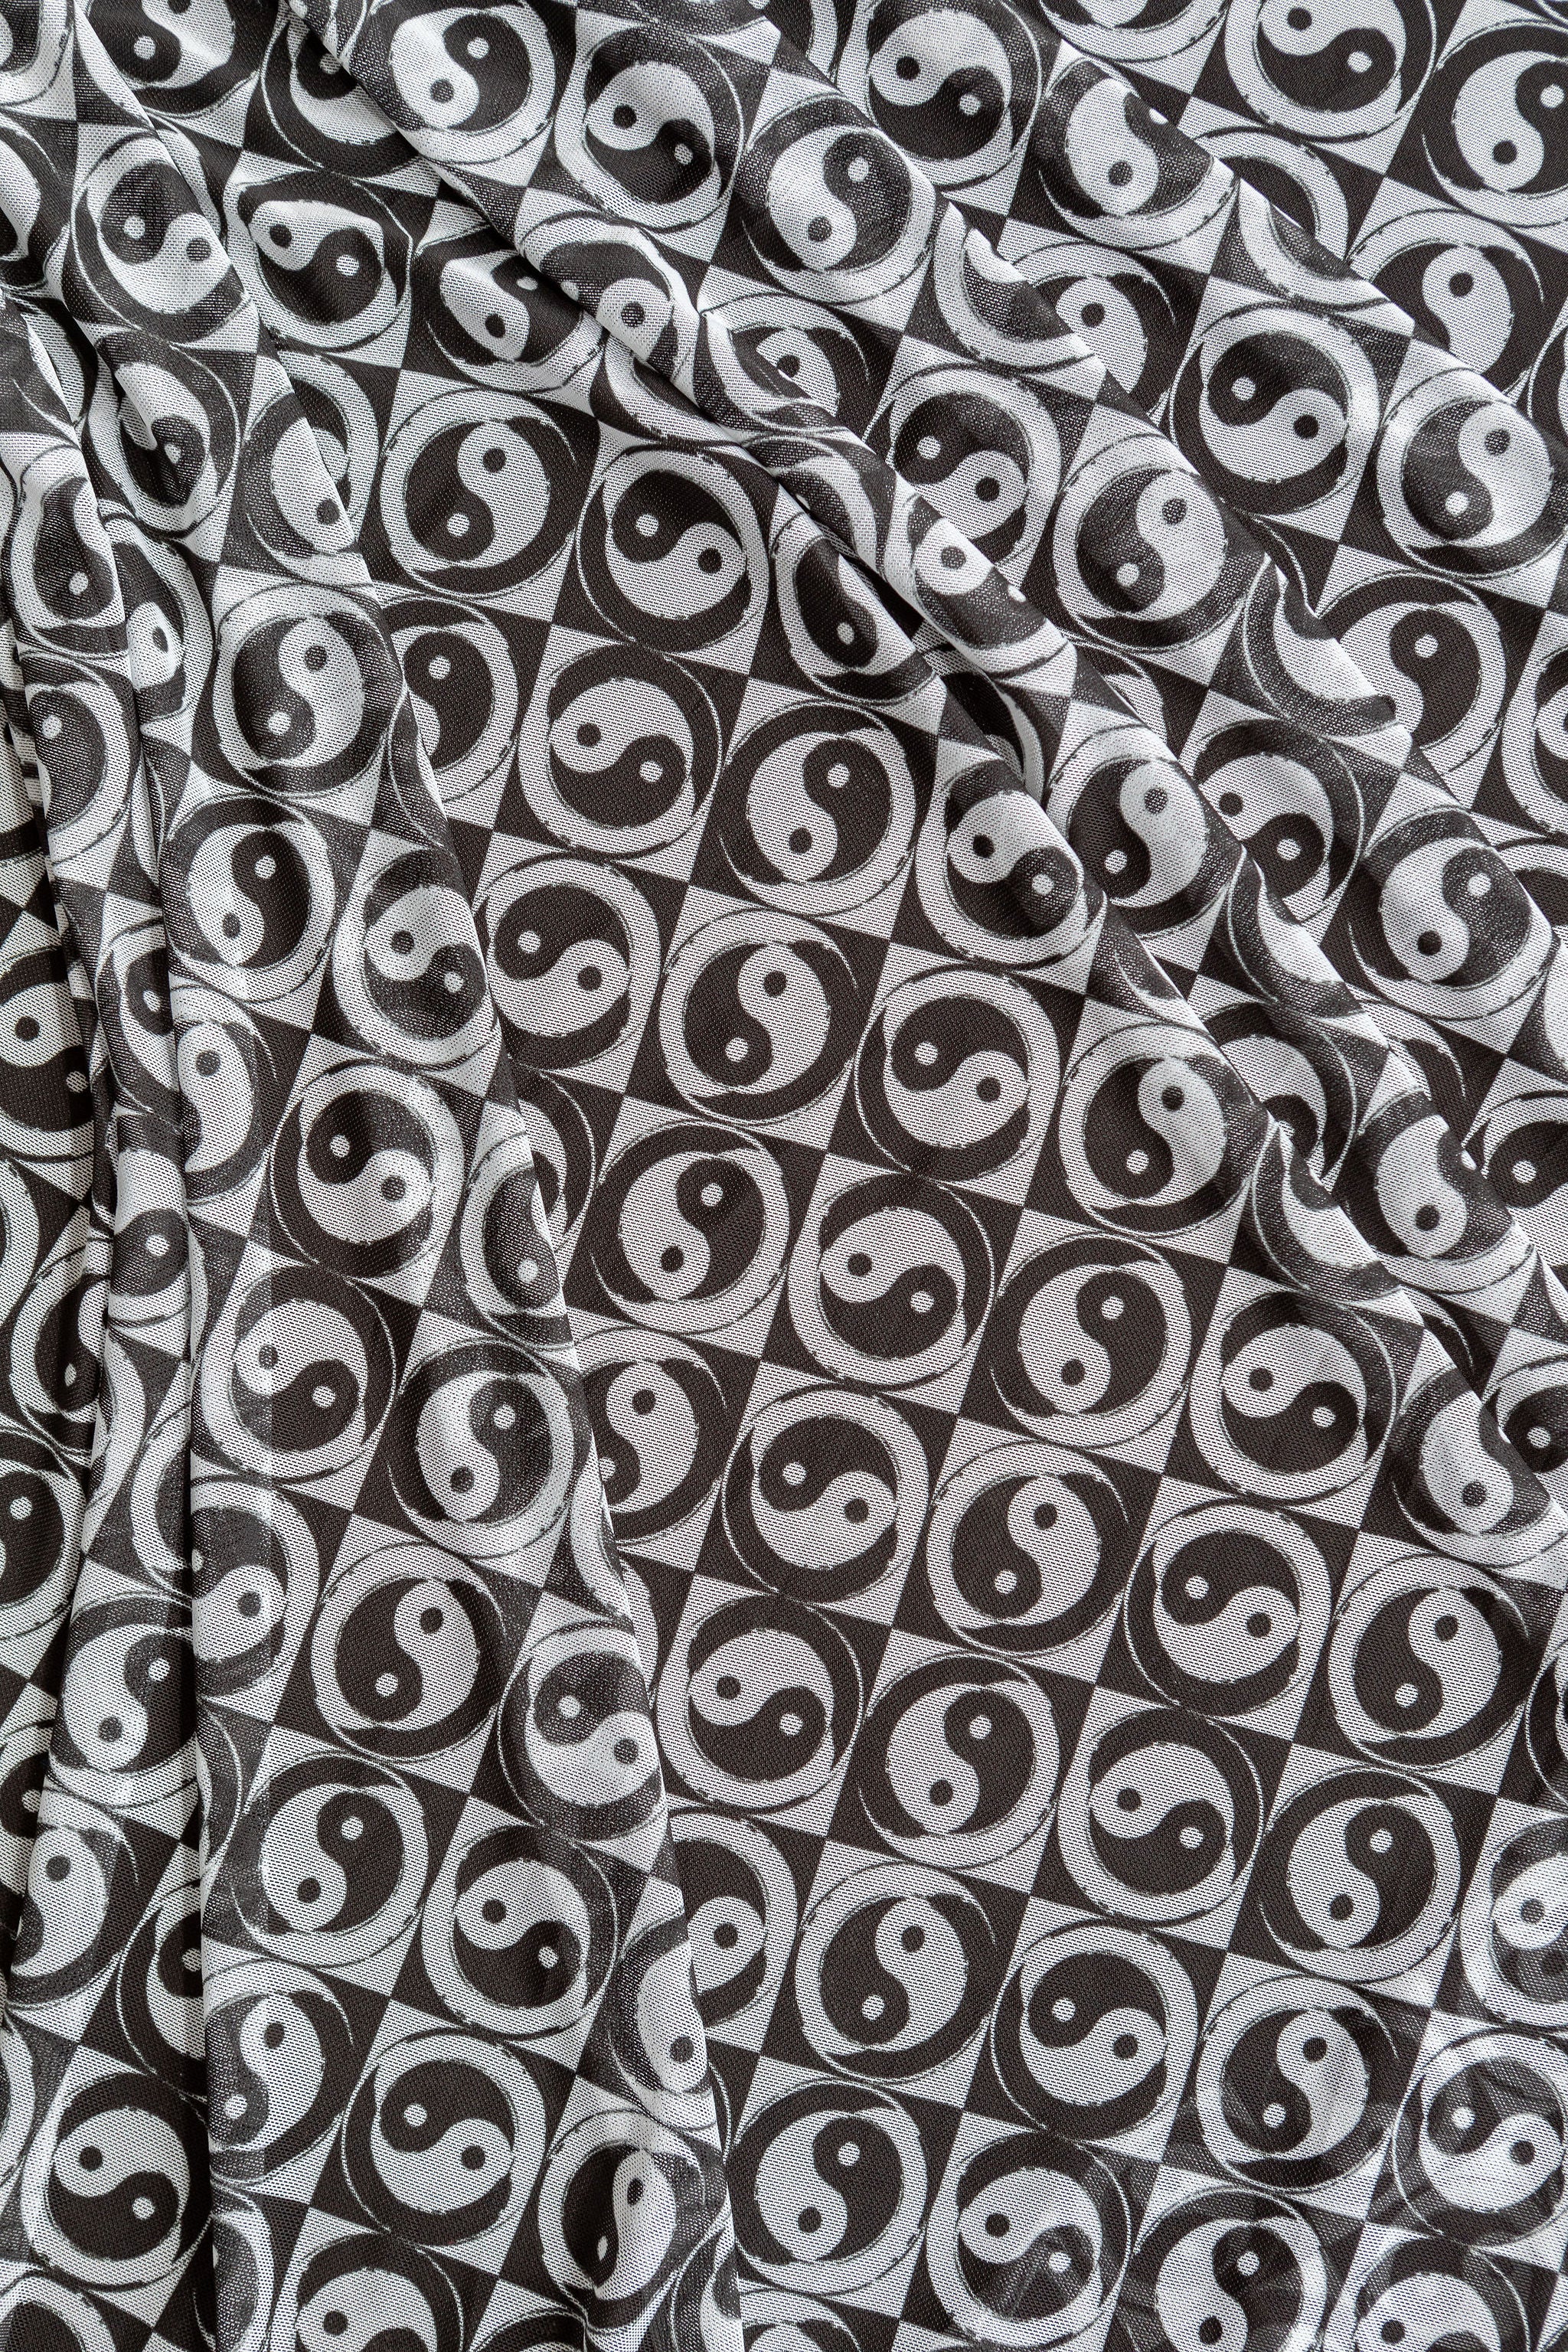 Yin Yang Mesh Fabric